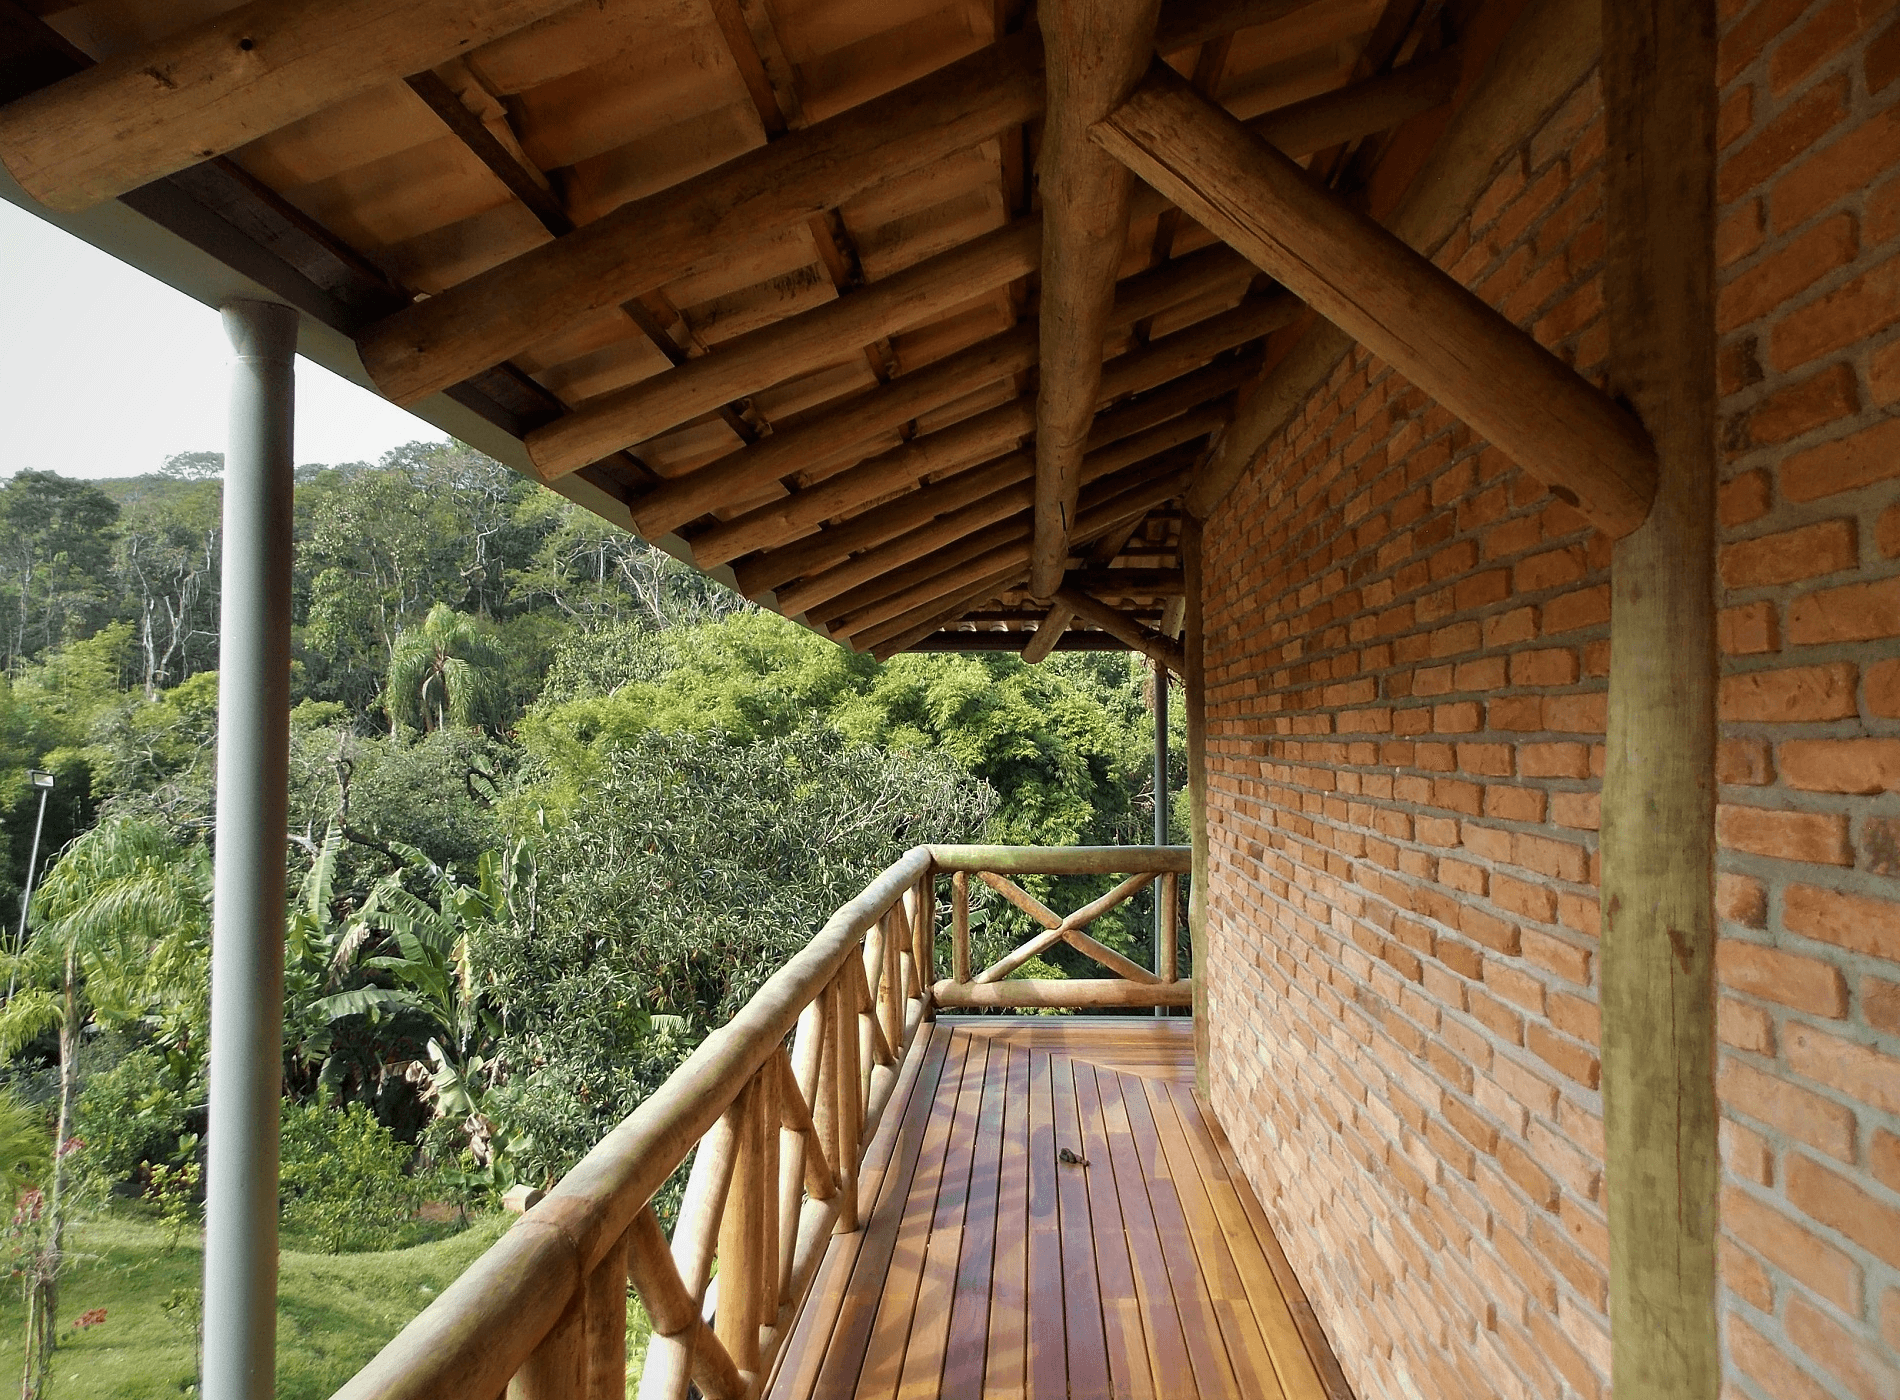 Mais uma imagem evidenciando a beleza das Casas Rústicas com Estrutura de Madeira. As varandas tiveram destaque neste Projeto. A Estrutura de madeira recebeu tijolos de demolição.